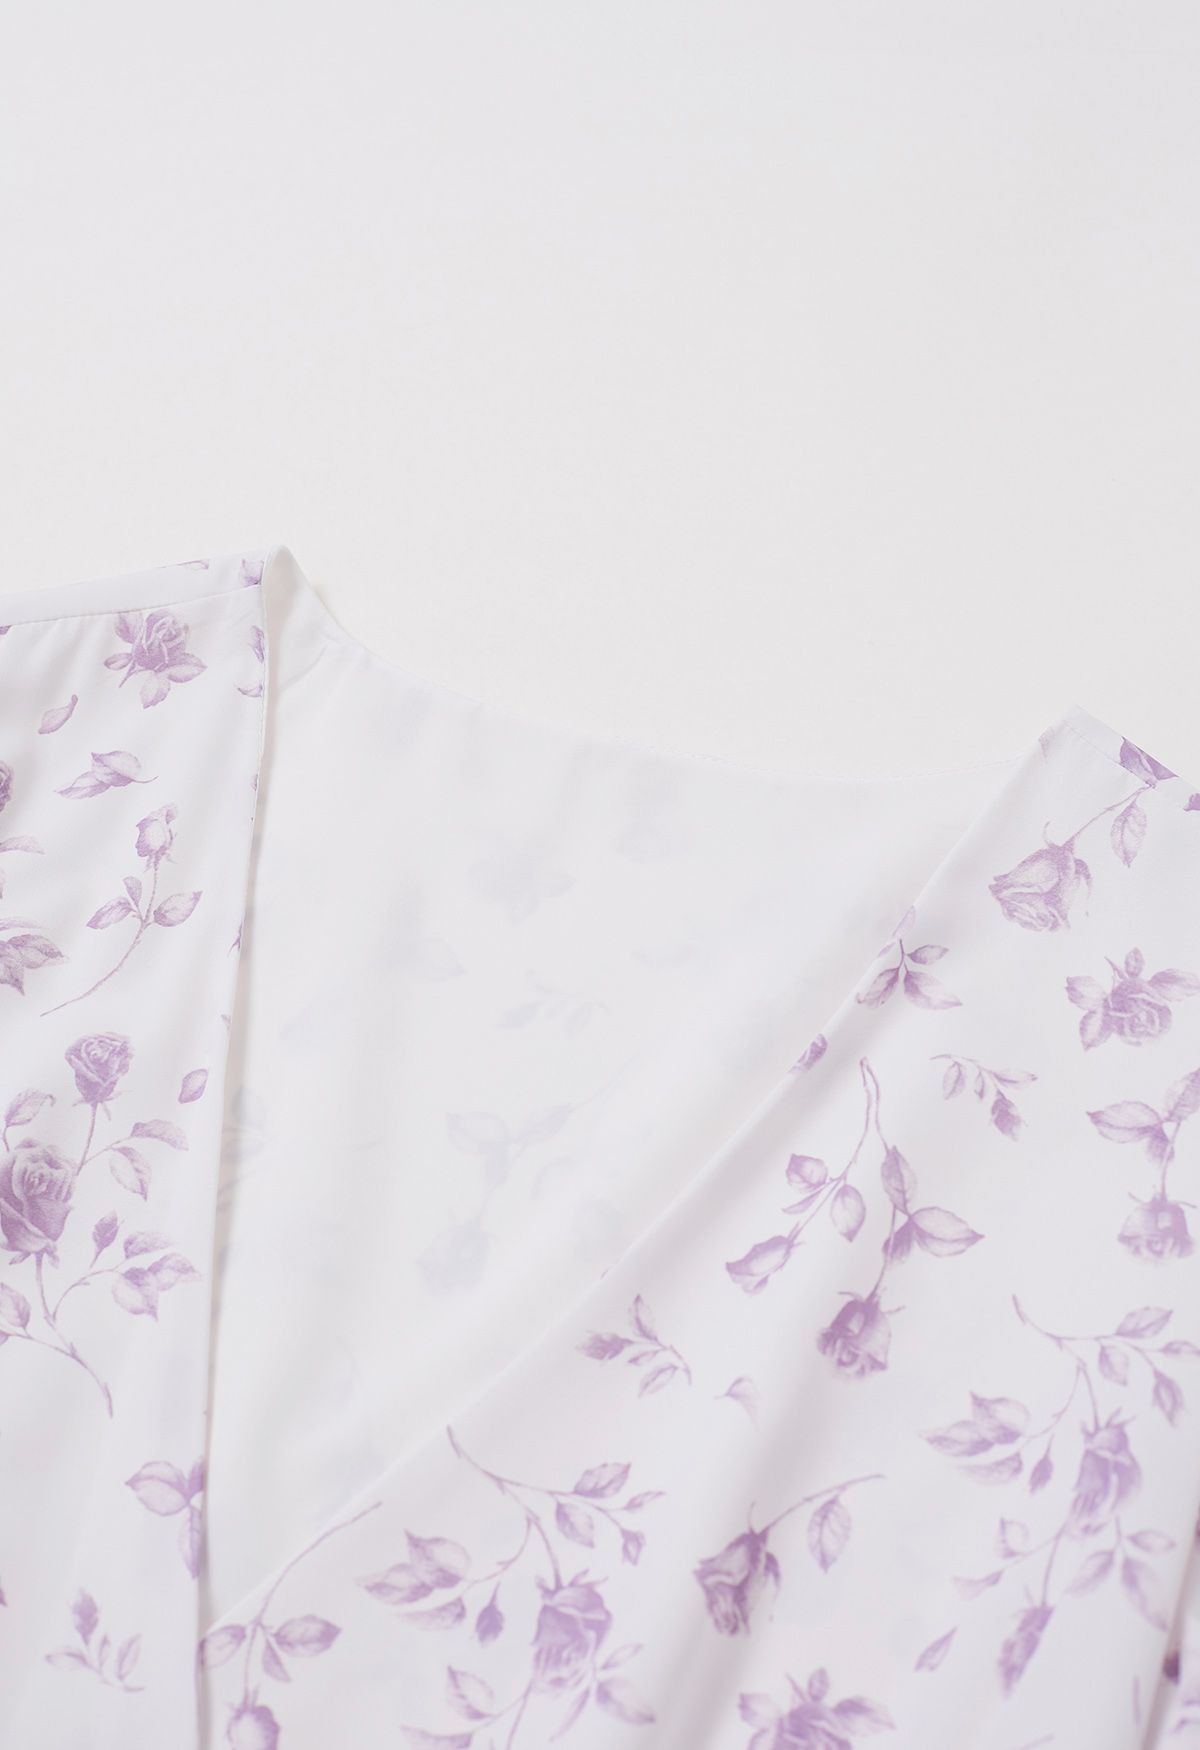 Watercolor Rose Print Wrap Midi Dress in Lilac